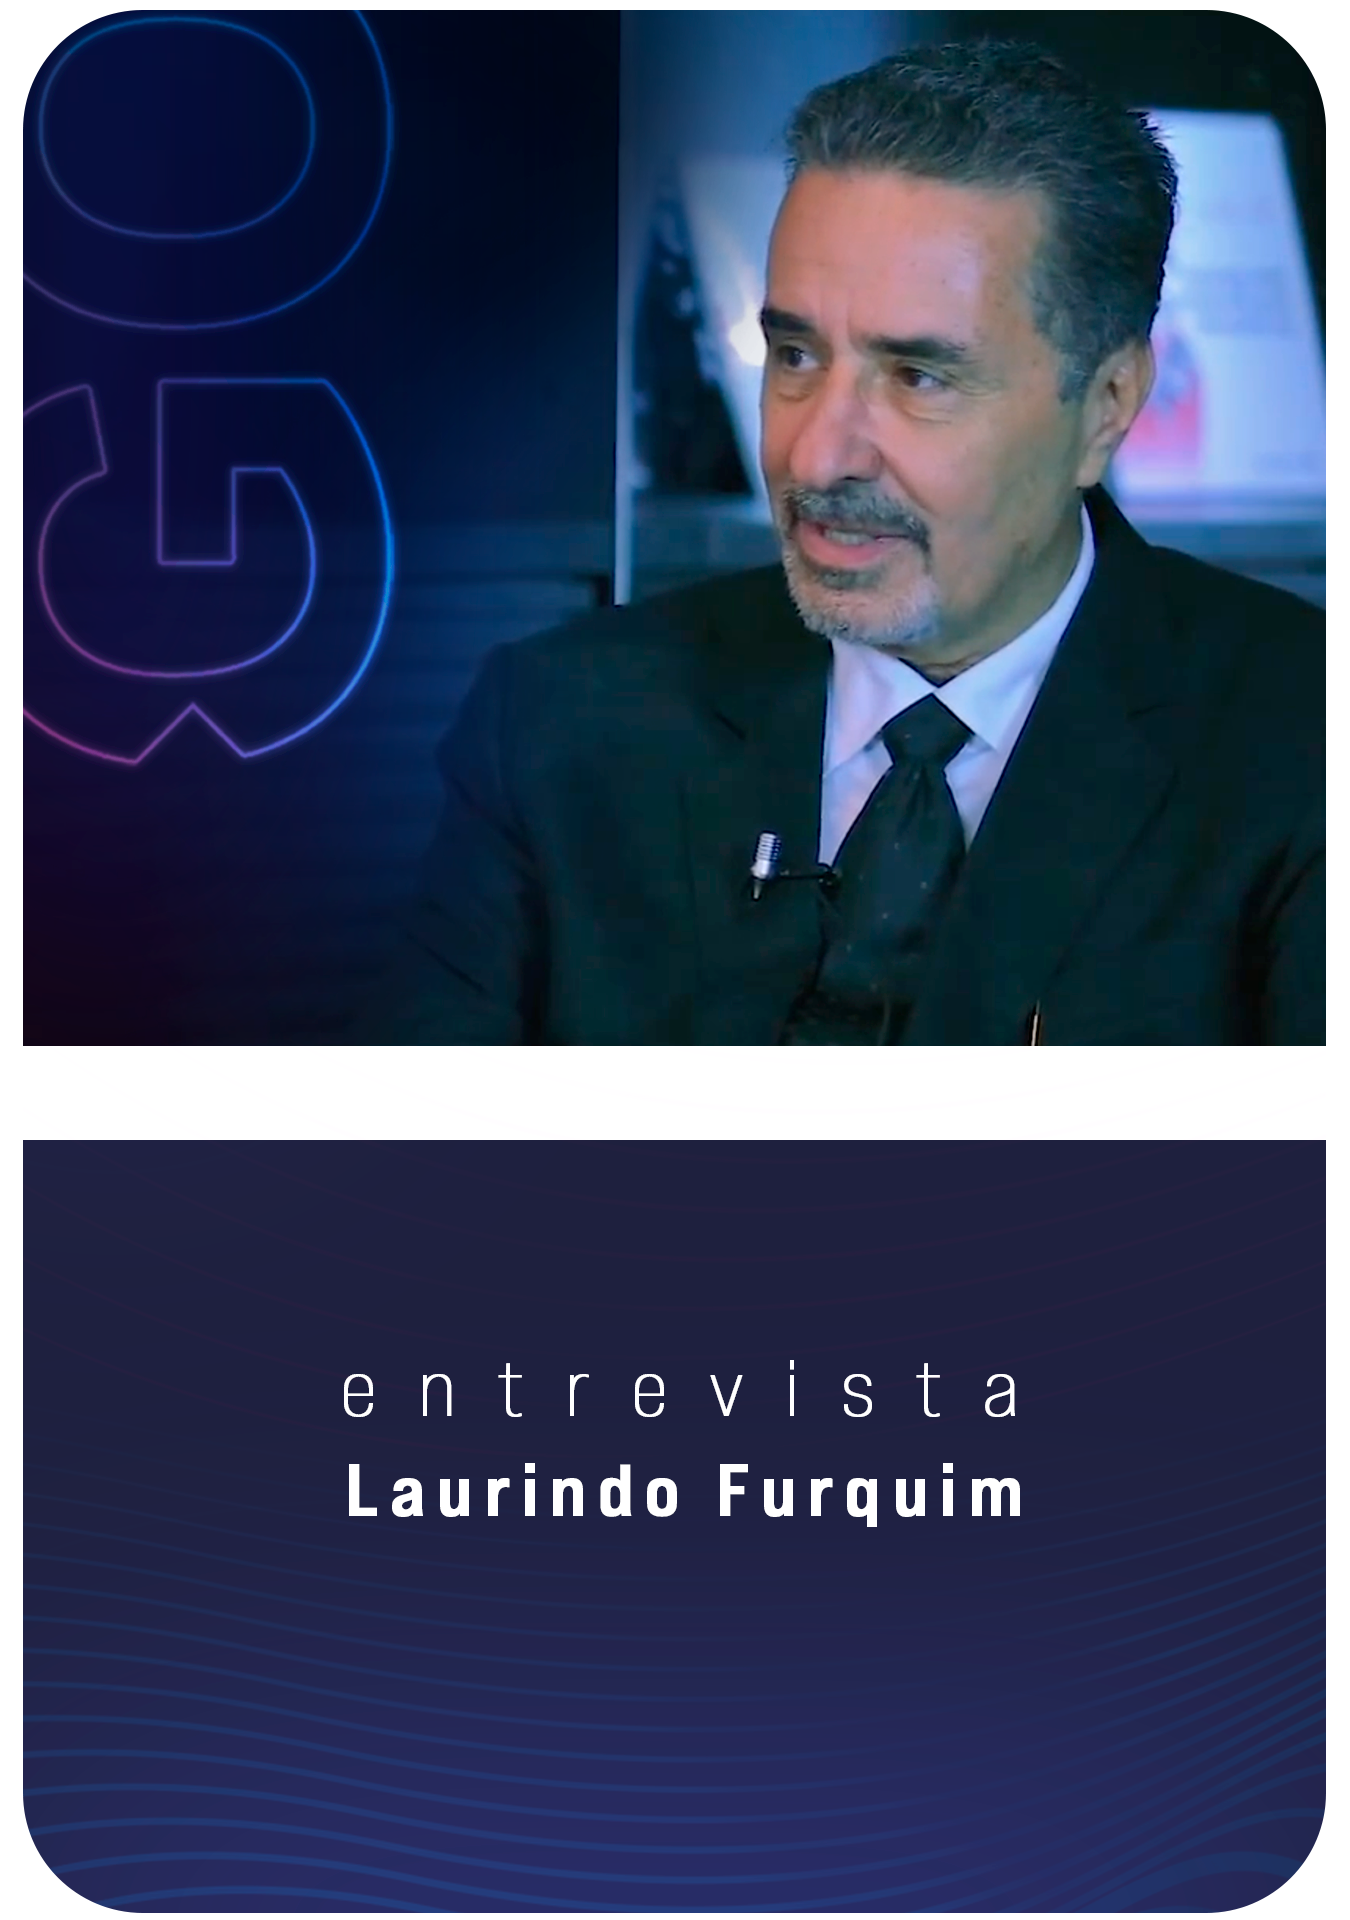 Dr. Laurindo Furquim